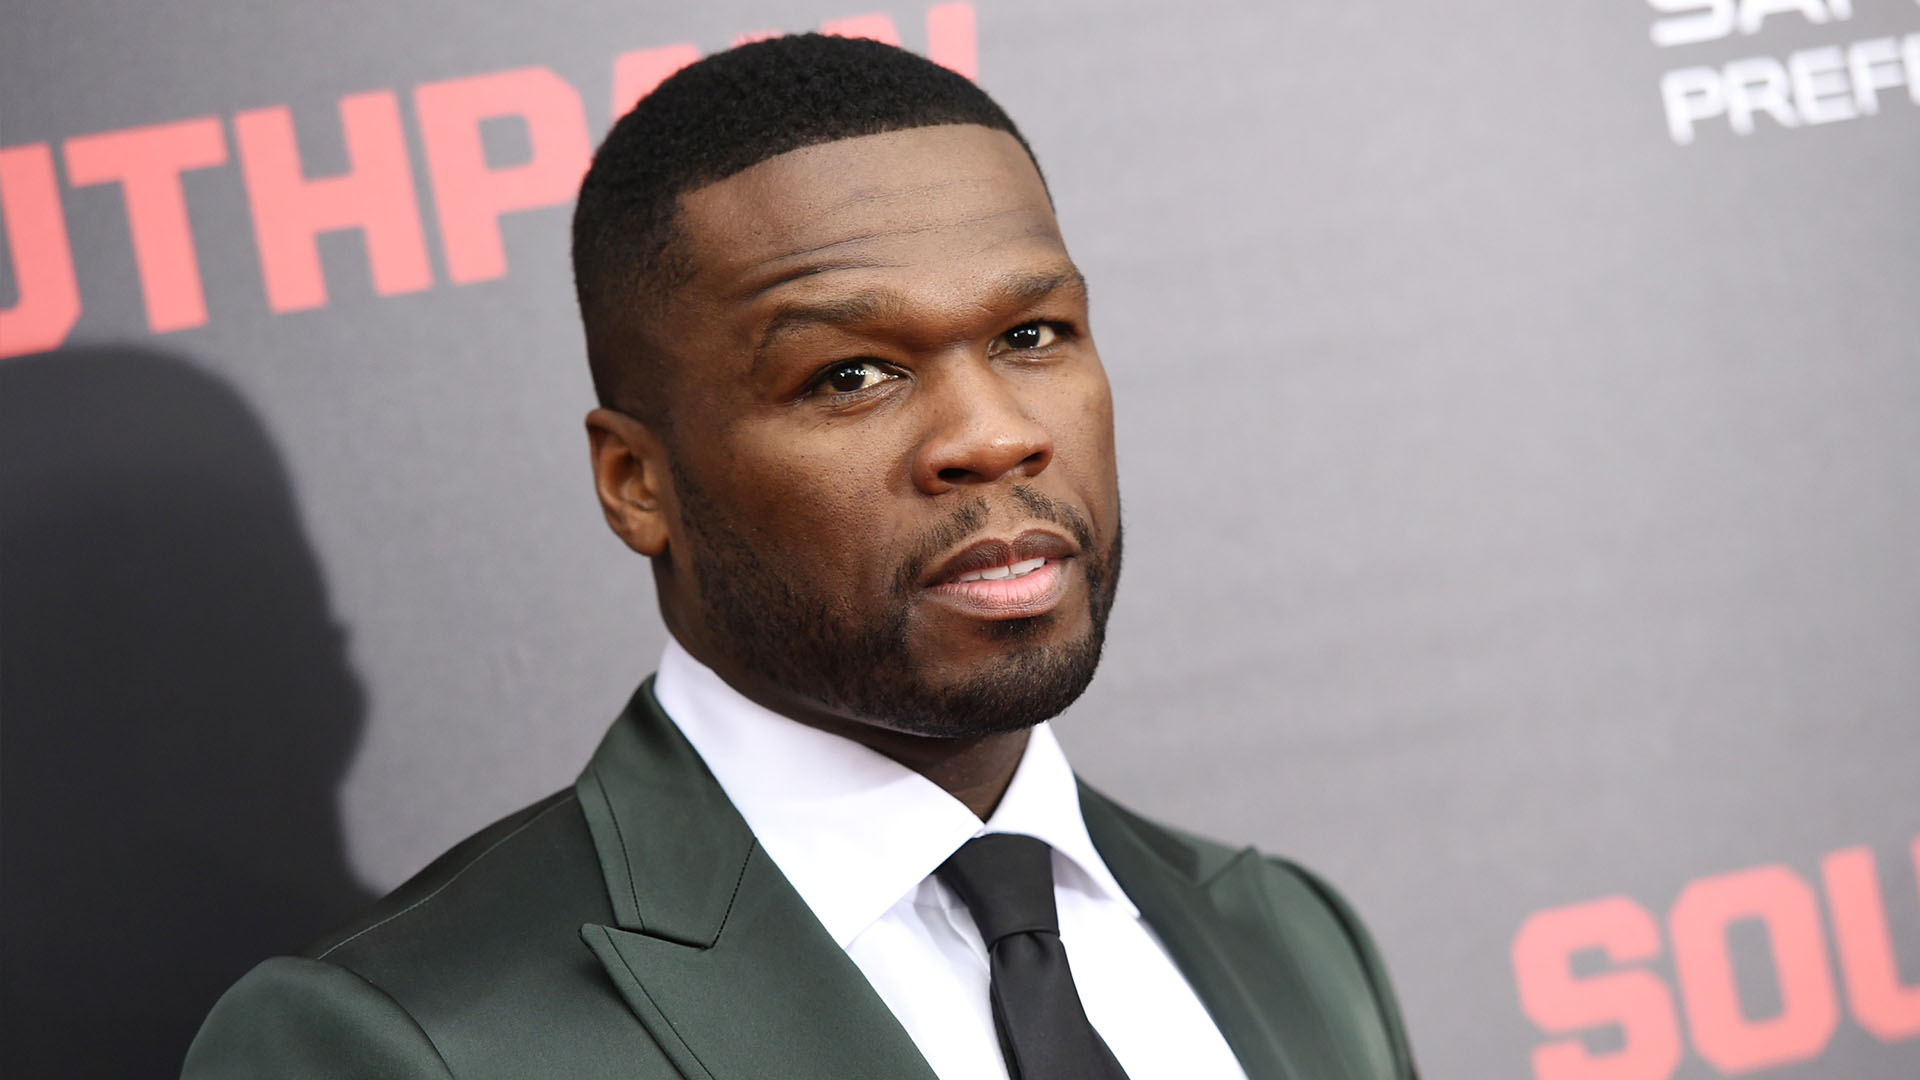 El rapero 50 Cent tiene una fortuna en bitcoins (y acaba de descubrirlo)